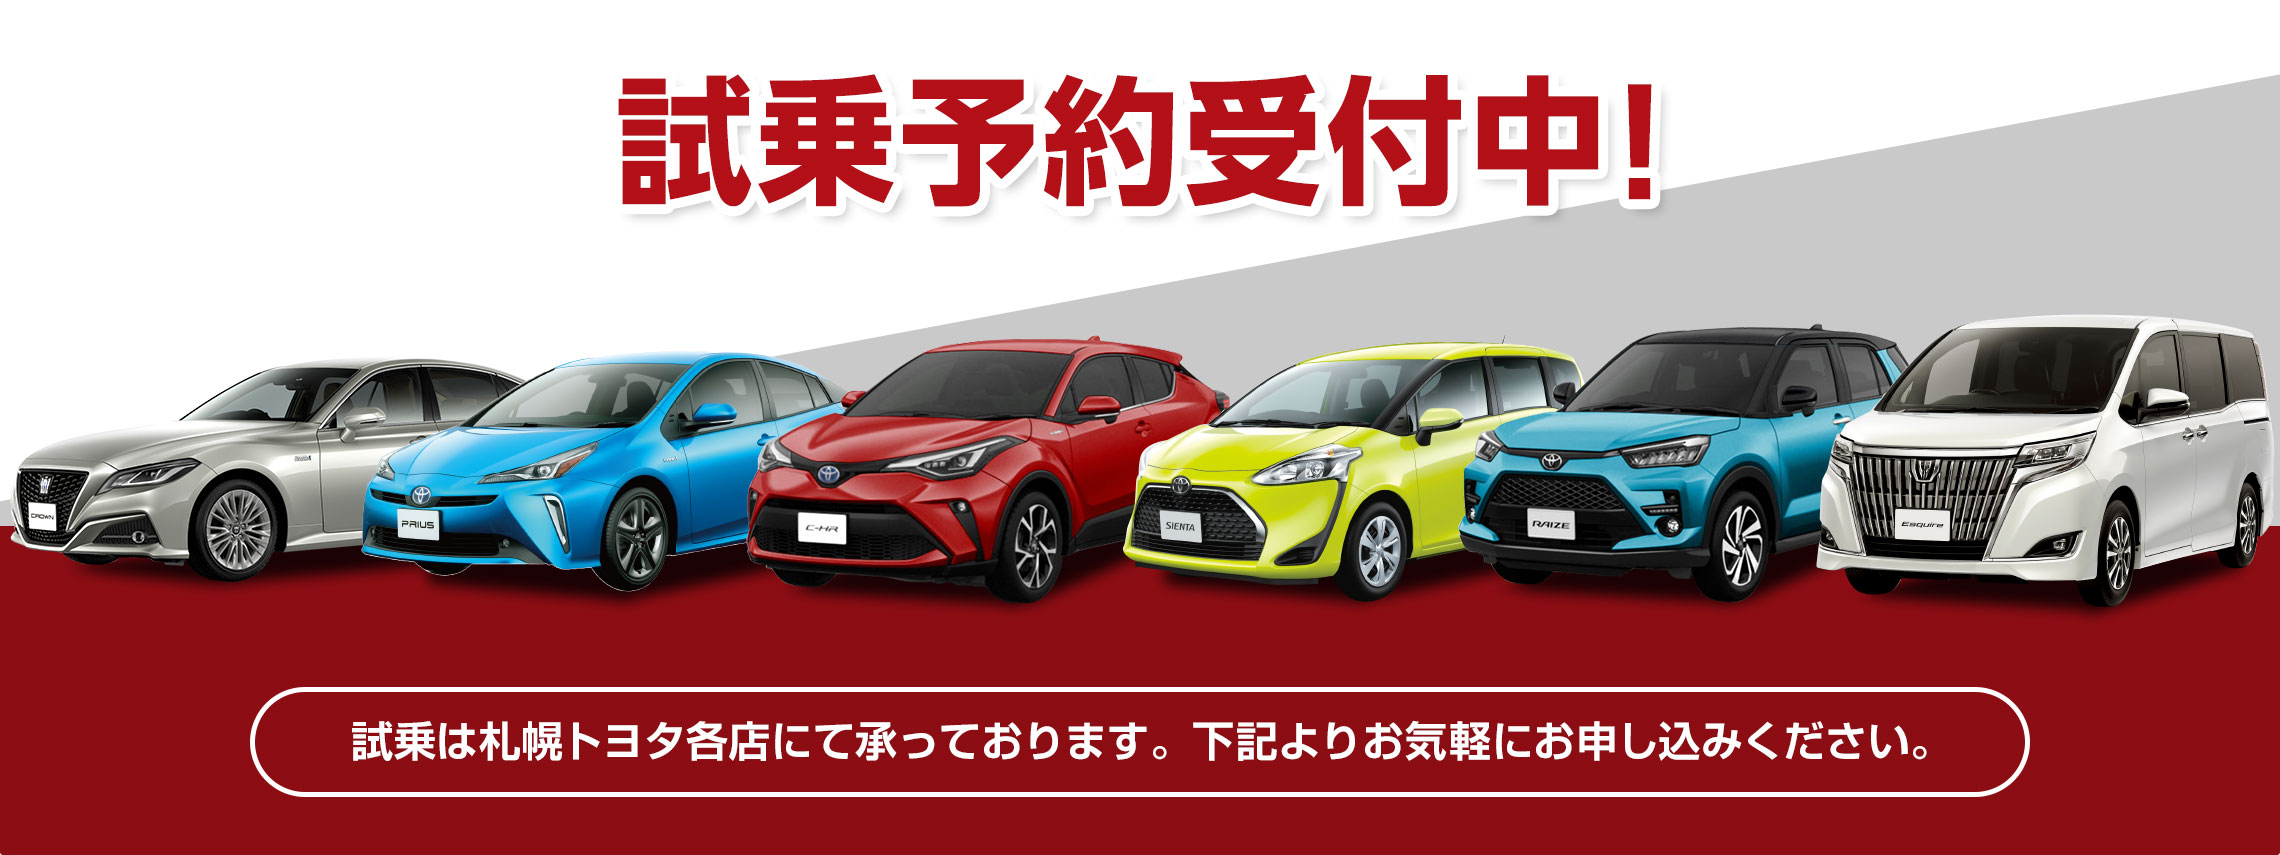 試乗車 展示車情報 札幌トヨタ自動車